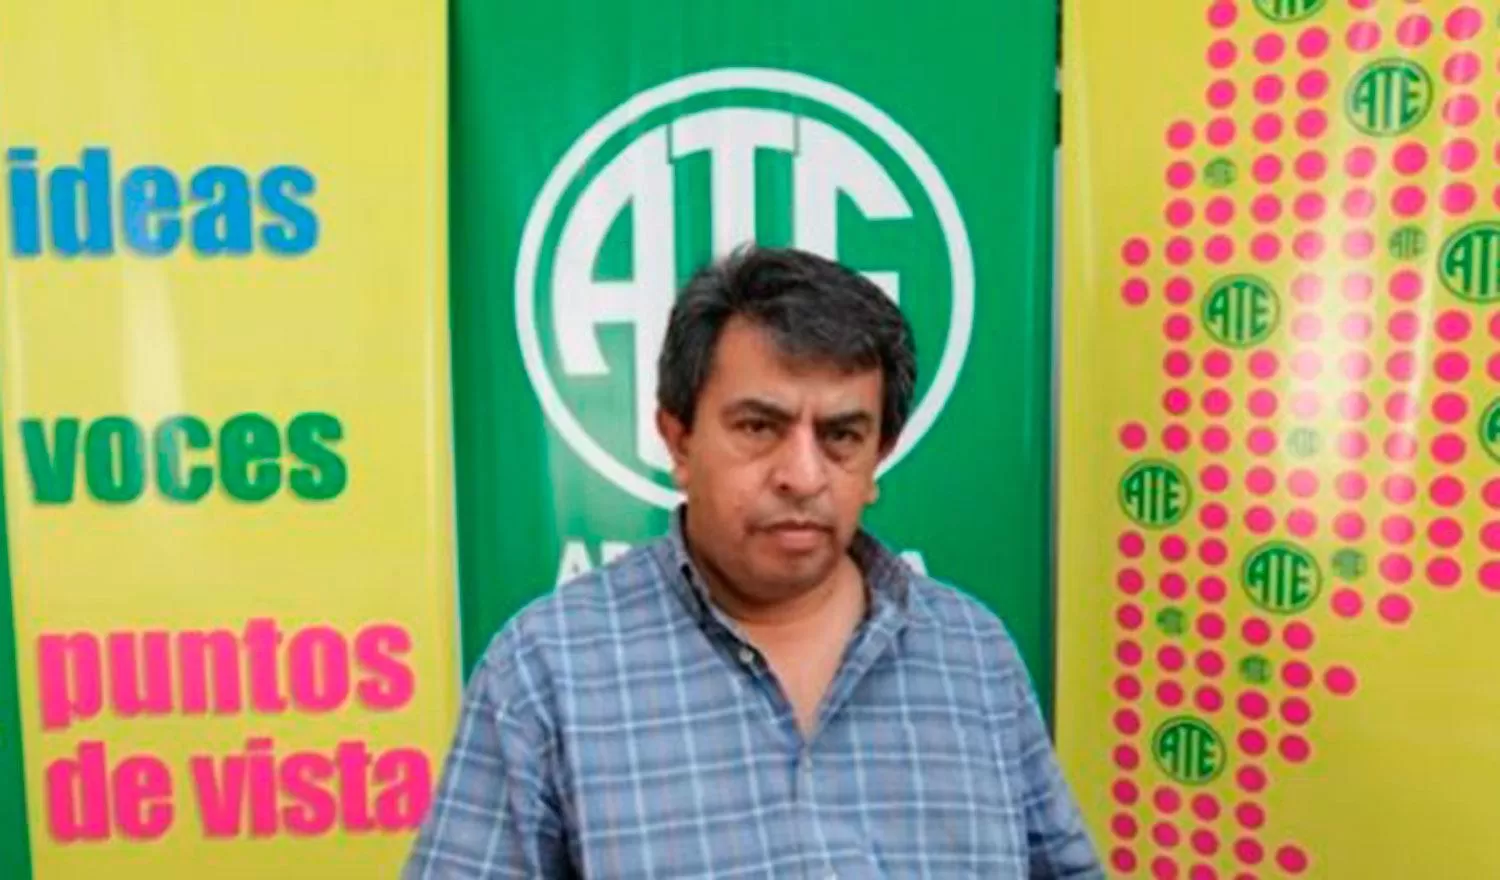 ANGEL MARCELO SÁNCHEZ. El secretario general de ATE afronta un proceso del Tribunal de Cuentas. Foto de Archivo